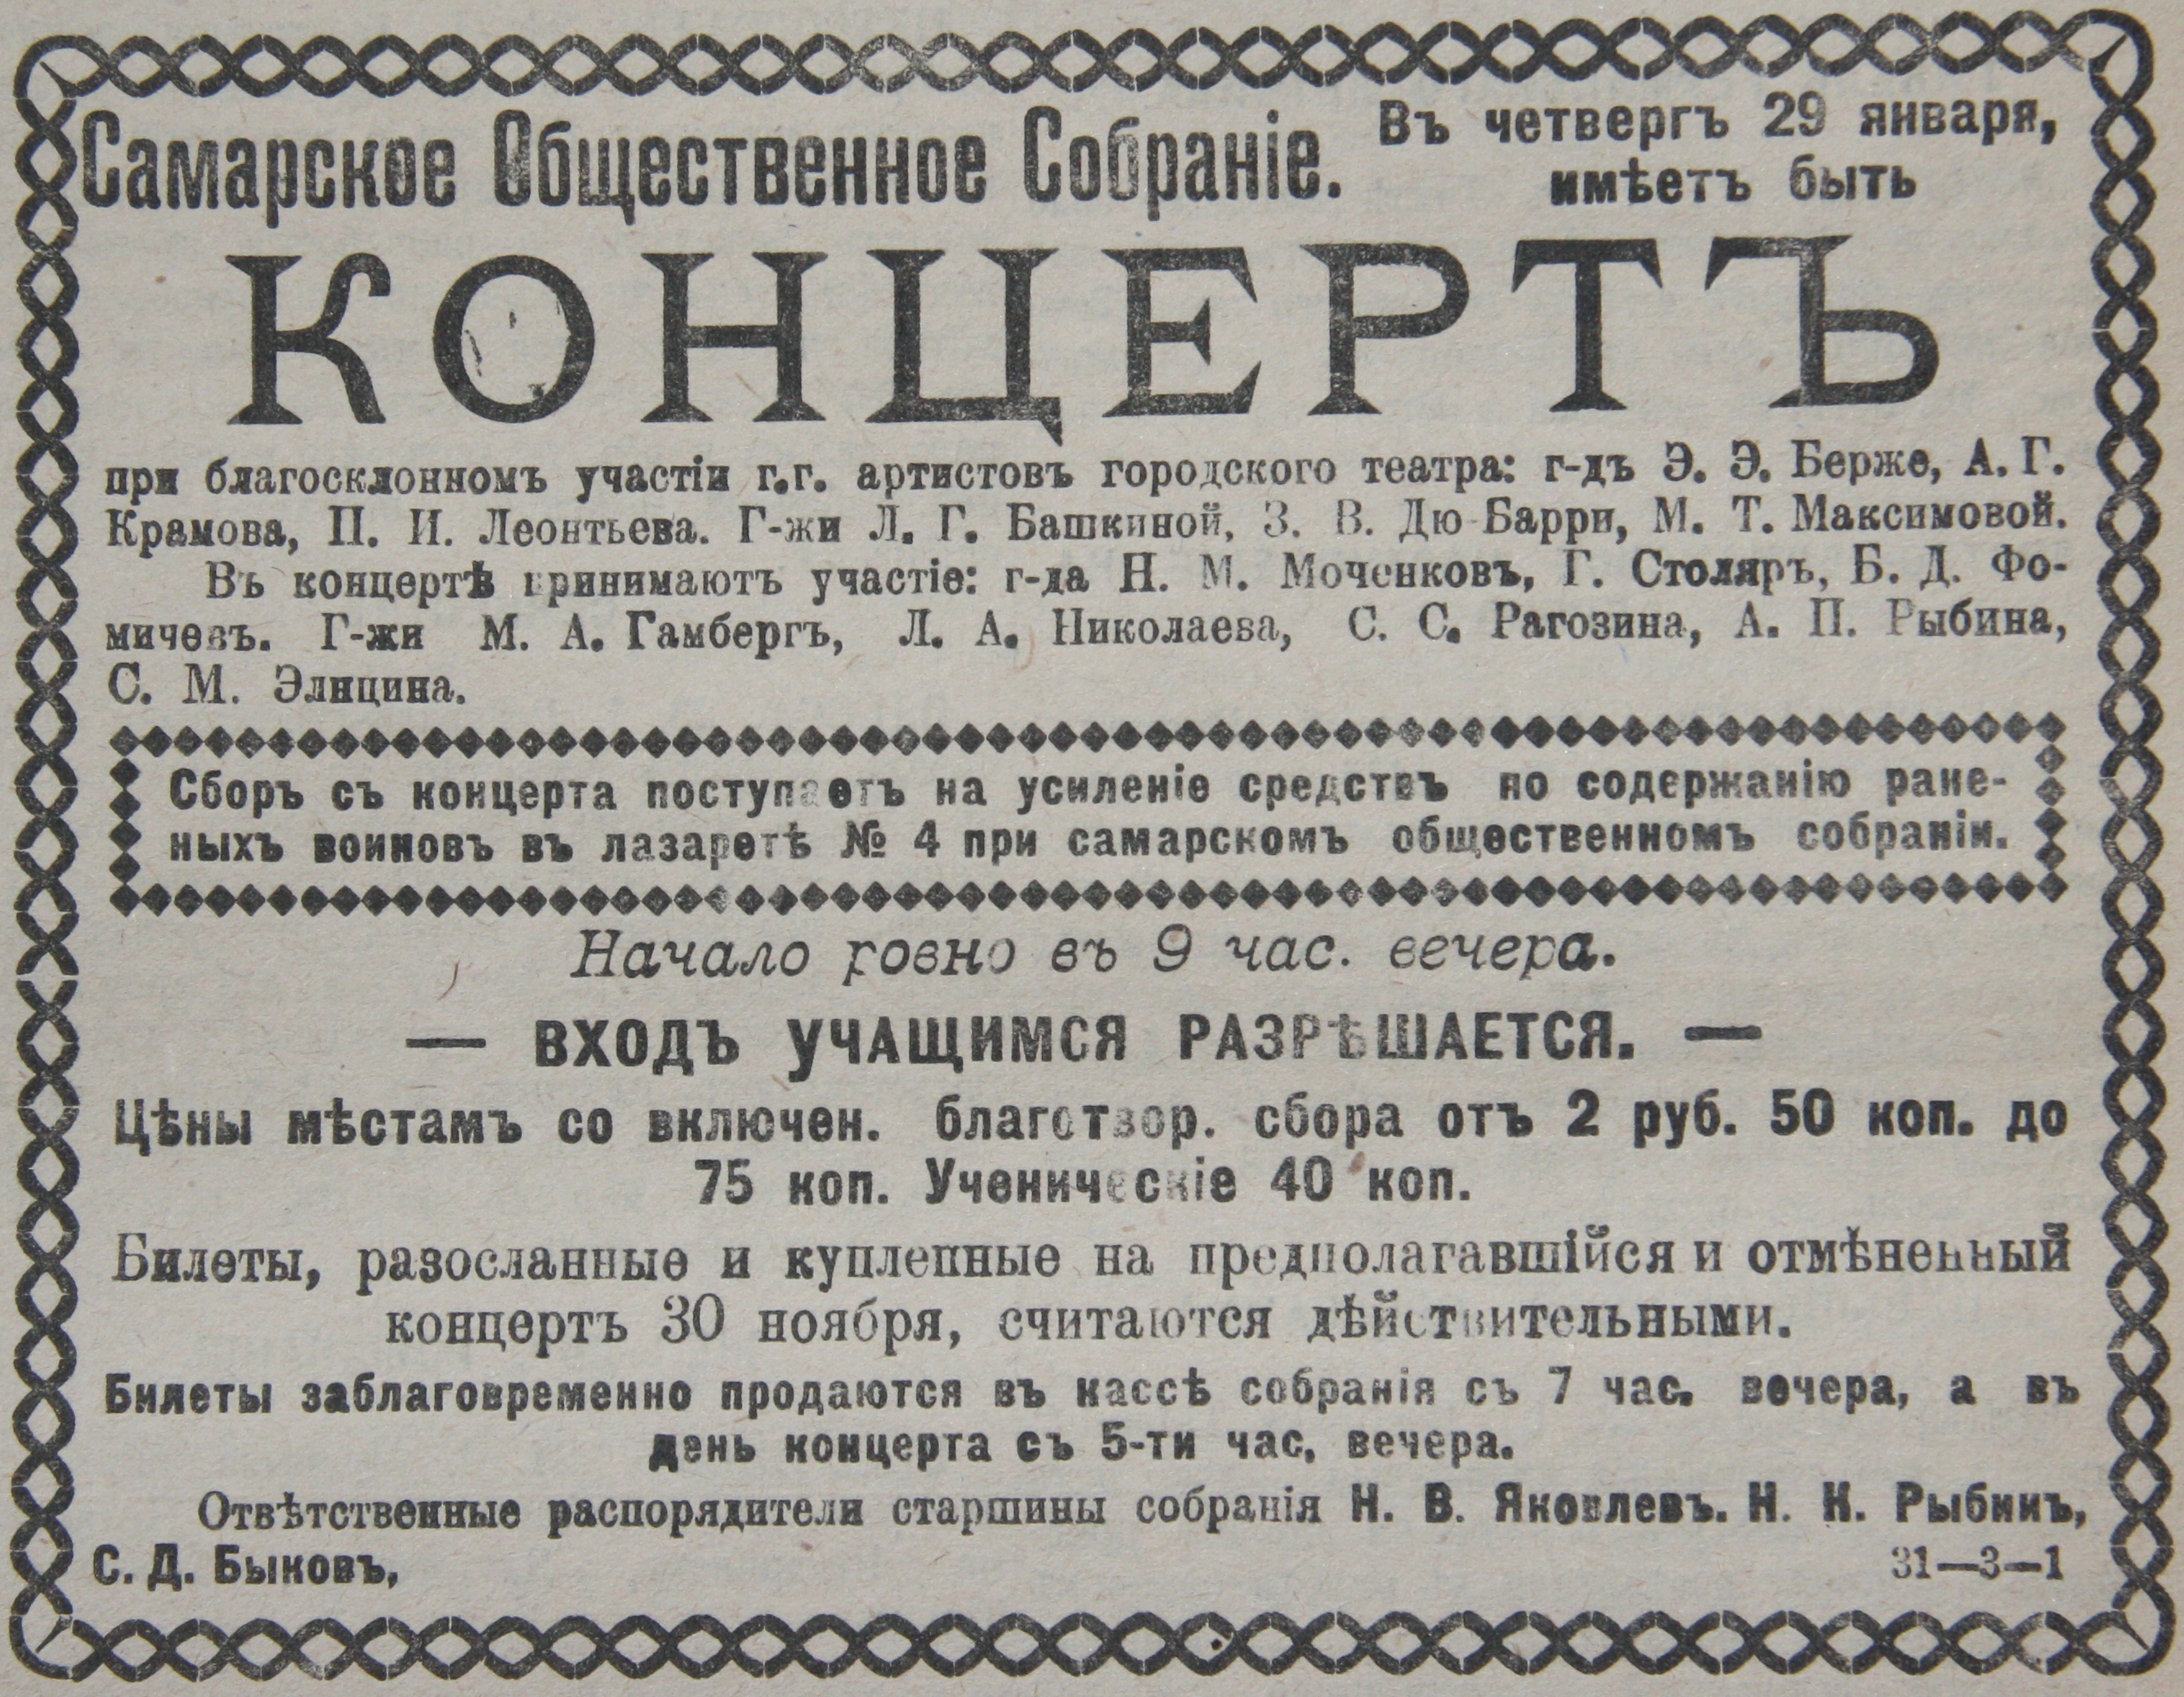 Самарская губерния в годы первой мировой войны. 1914-1917 годы.